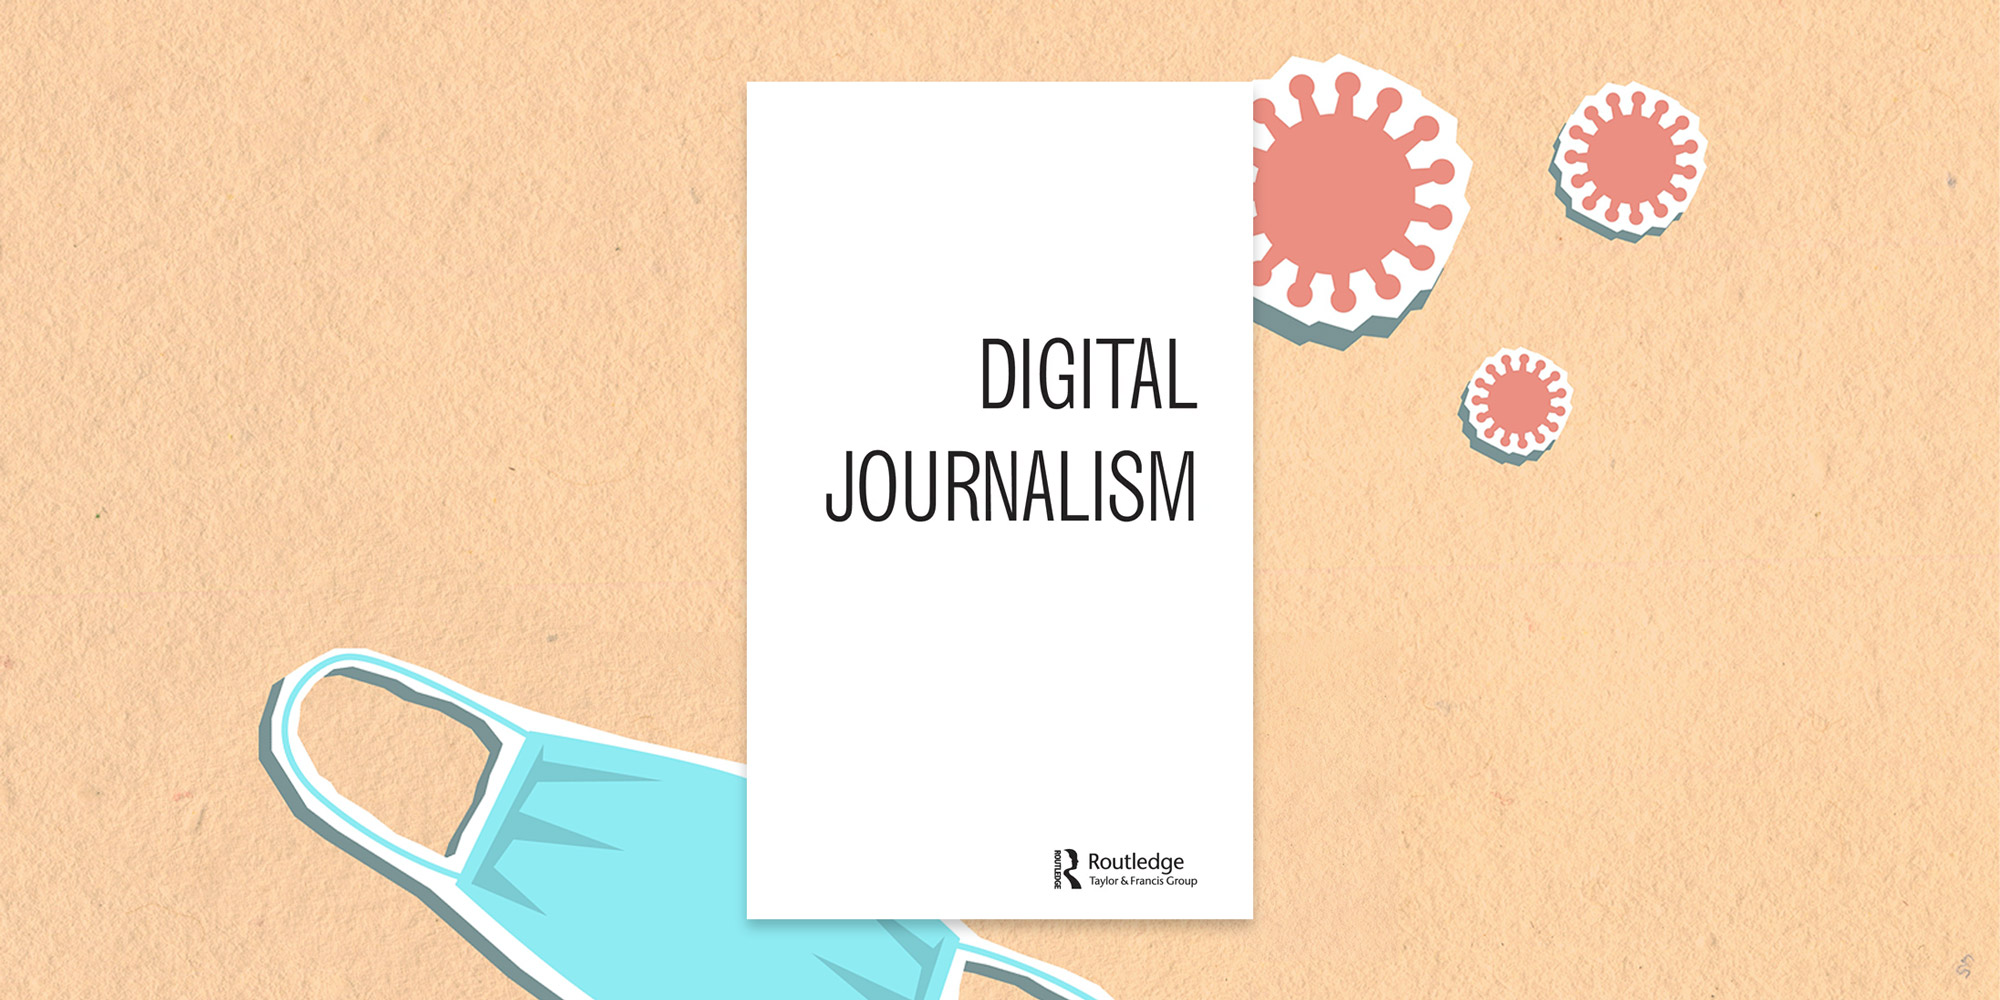 Das Cover der Digital Journalism, im Hintergrund die stilisierte Darstellung von Viren und einer Mund-Nasen-Maske